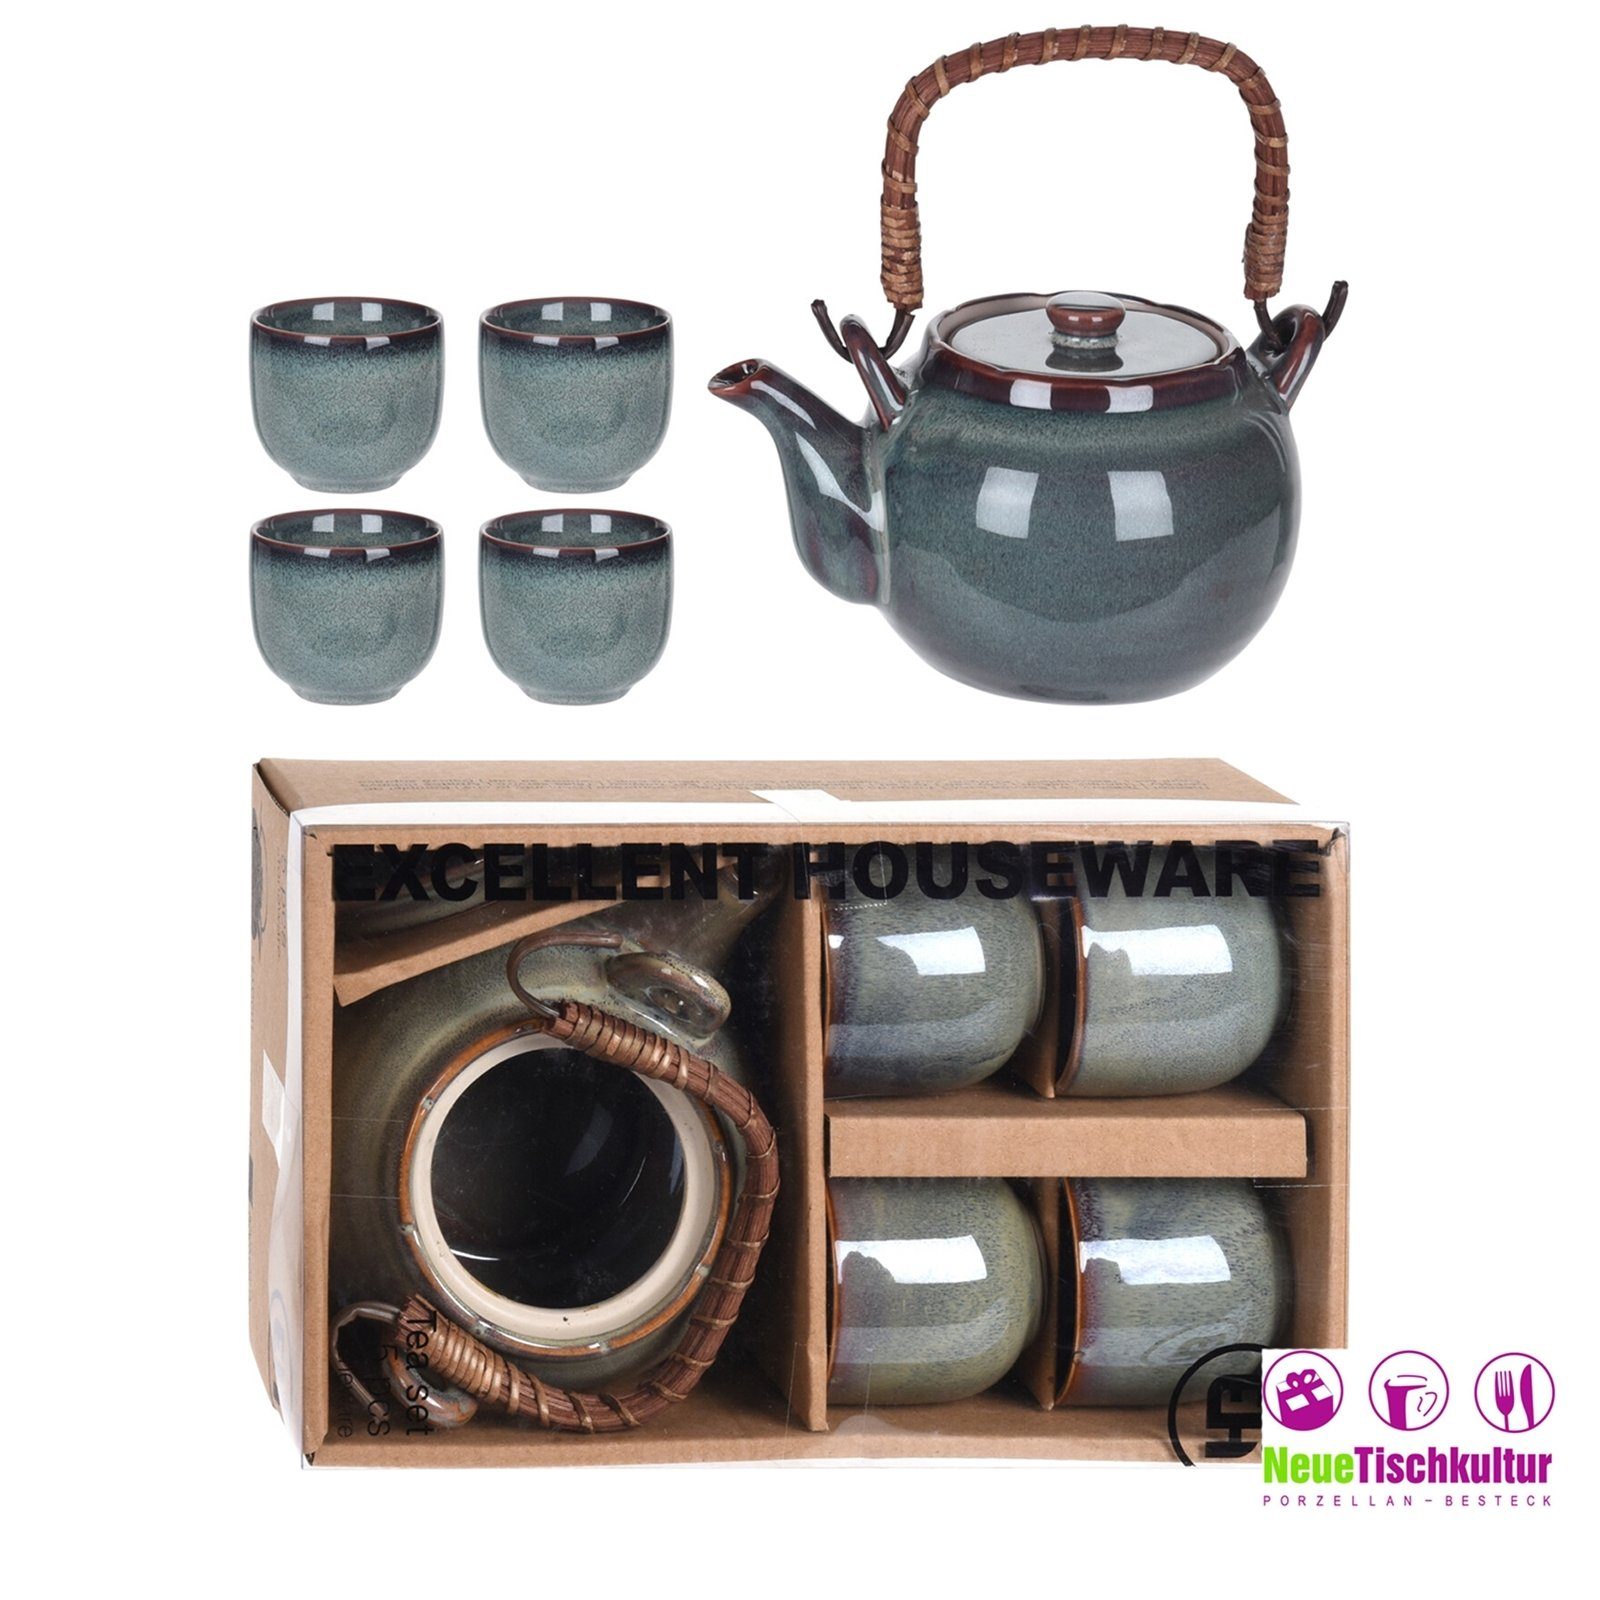 Neuetischkultur Teekanne Teekanne mit 4 Keramik Becher